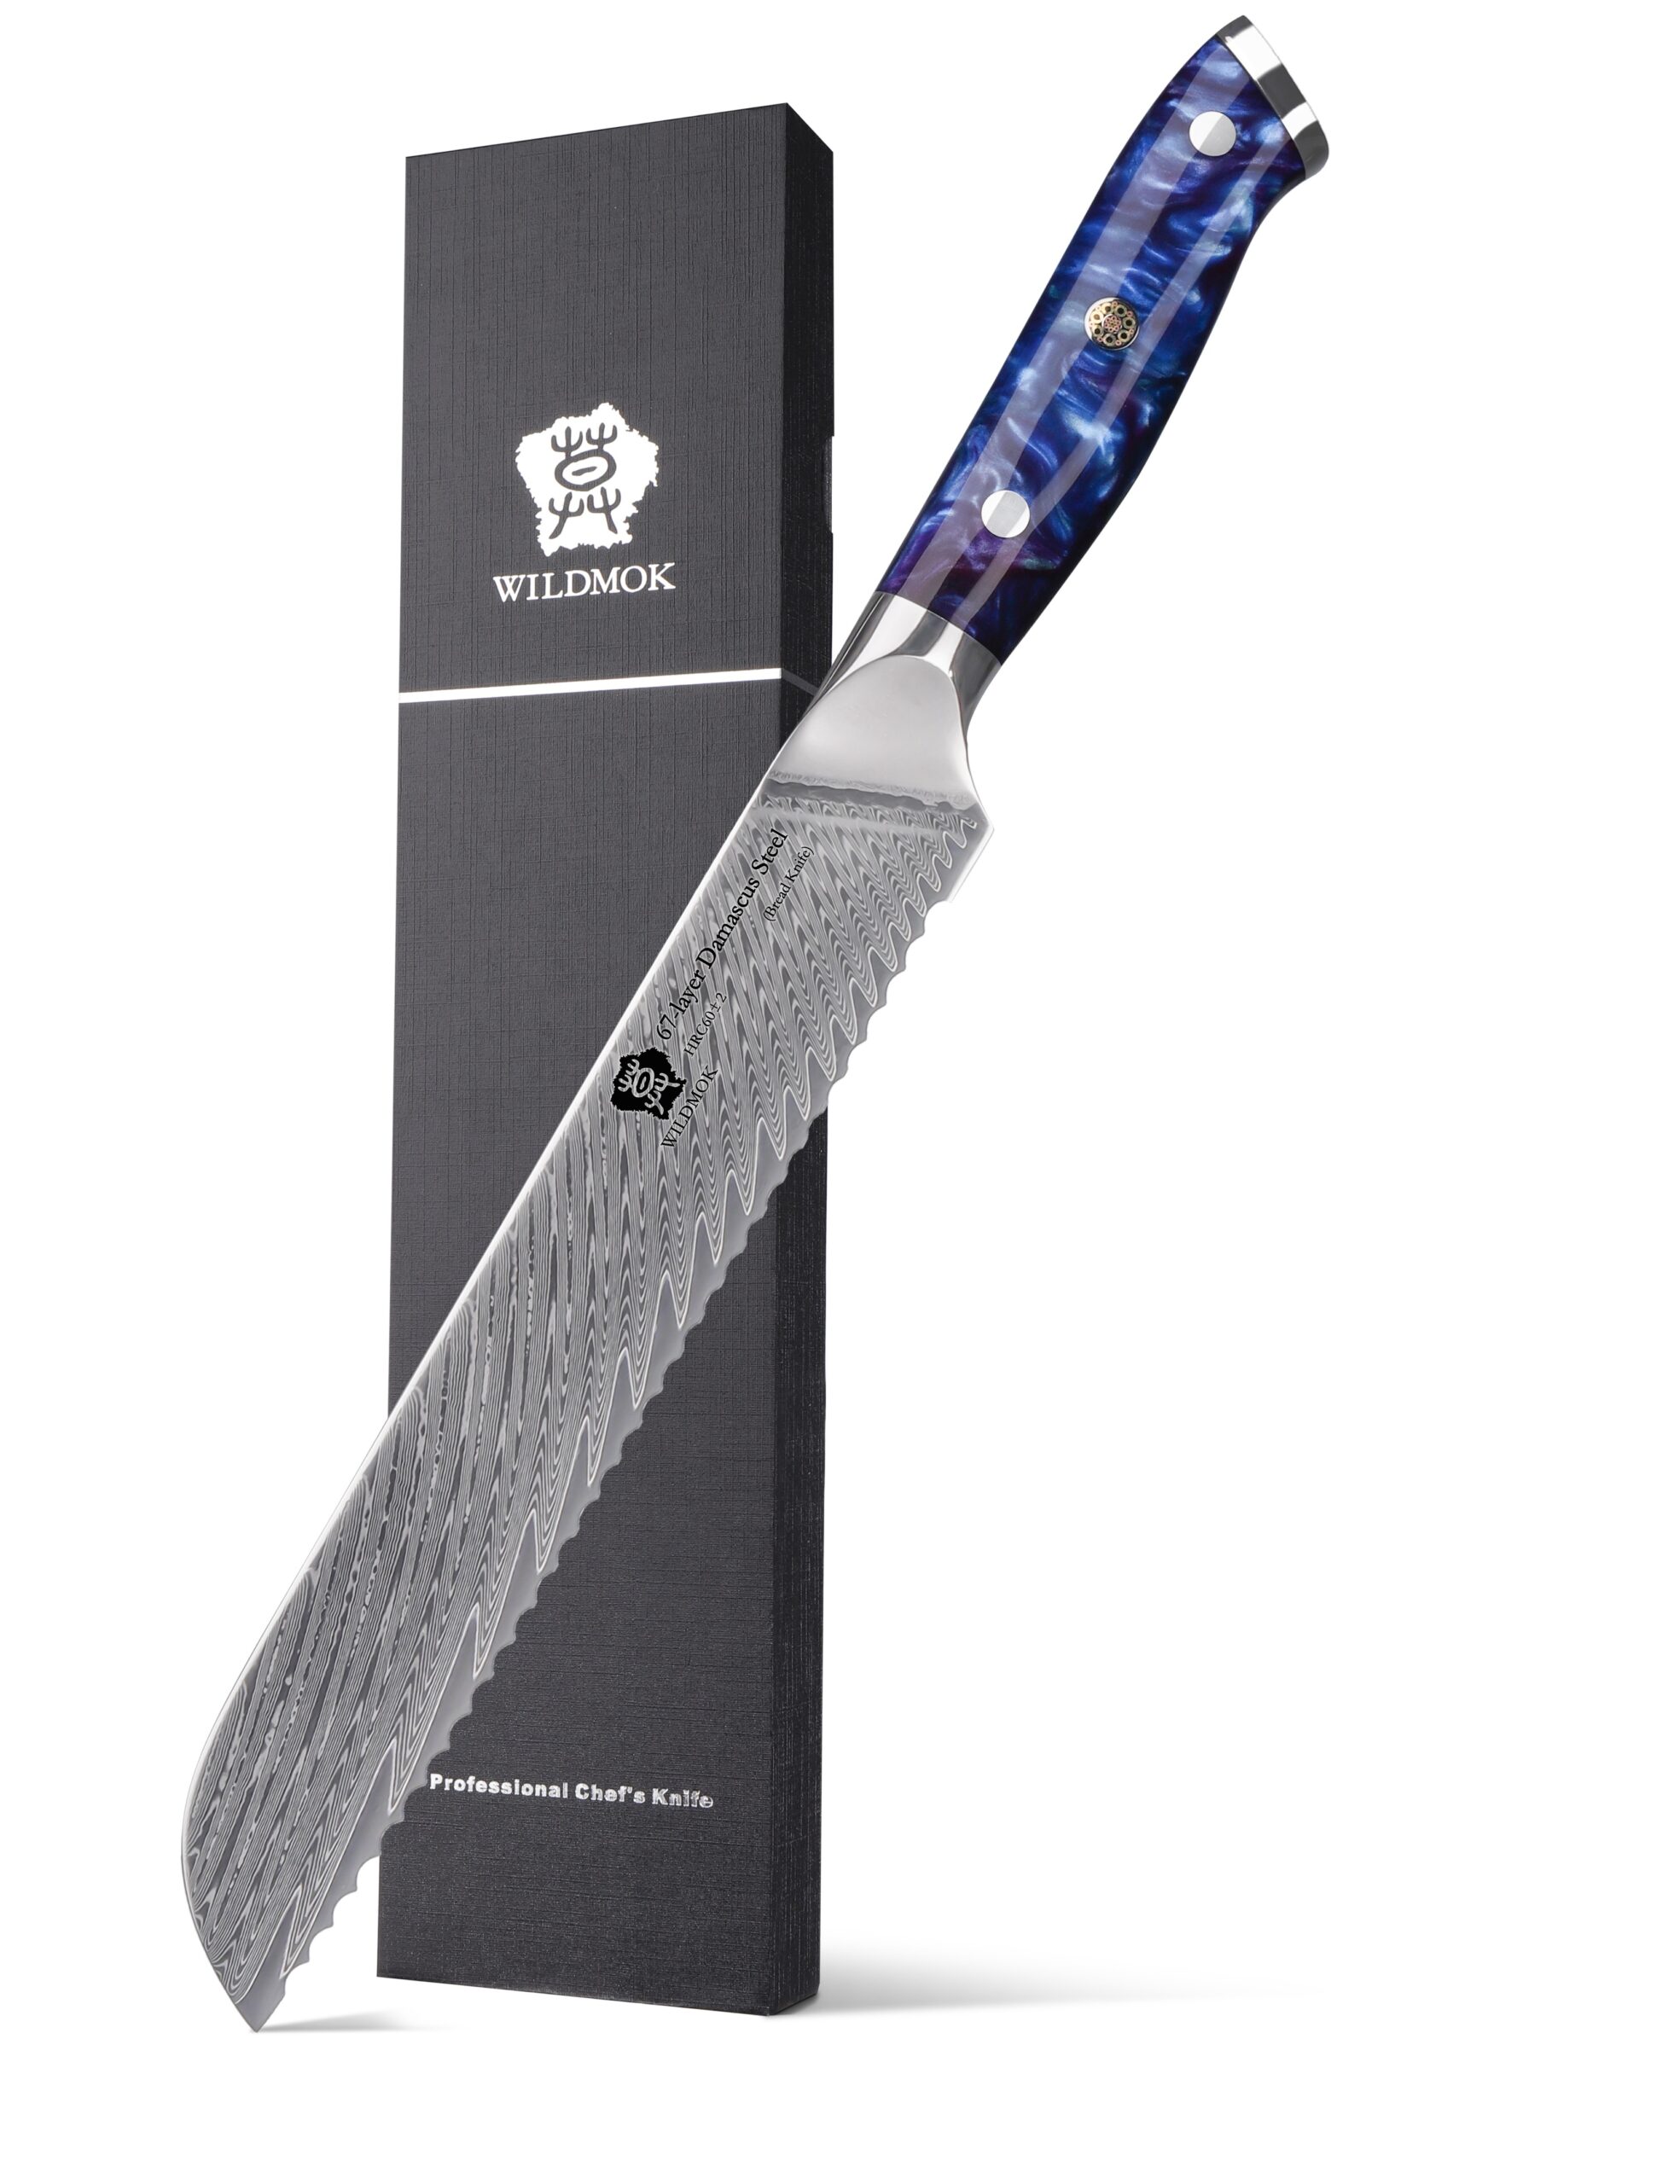 Vvwgkpk bread knives 8 inch sharp German stainless steel knife